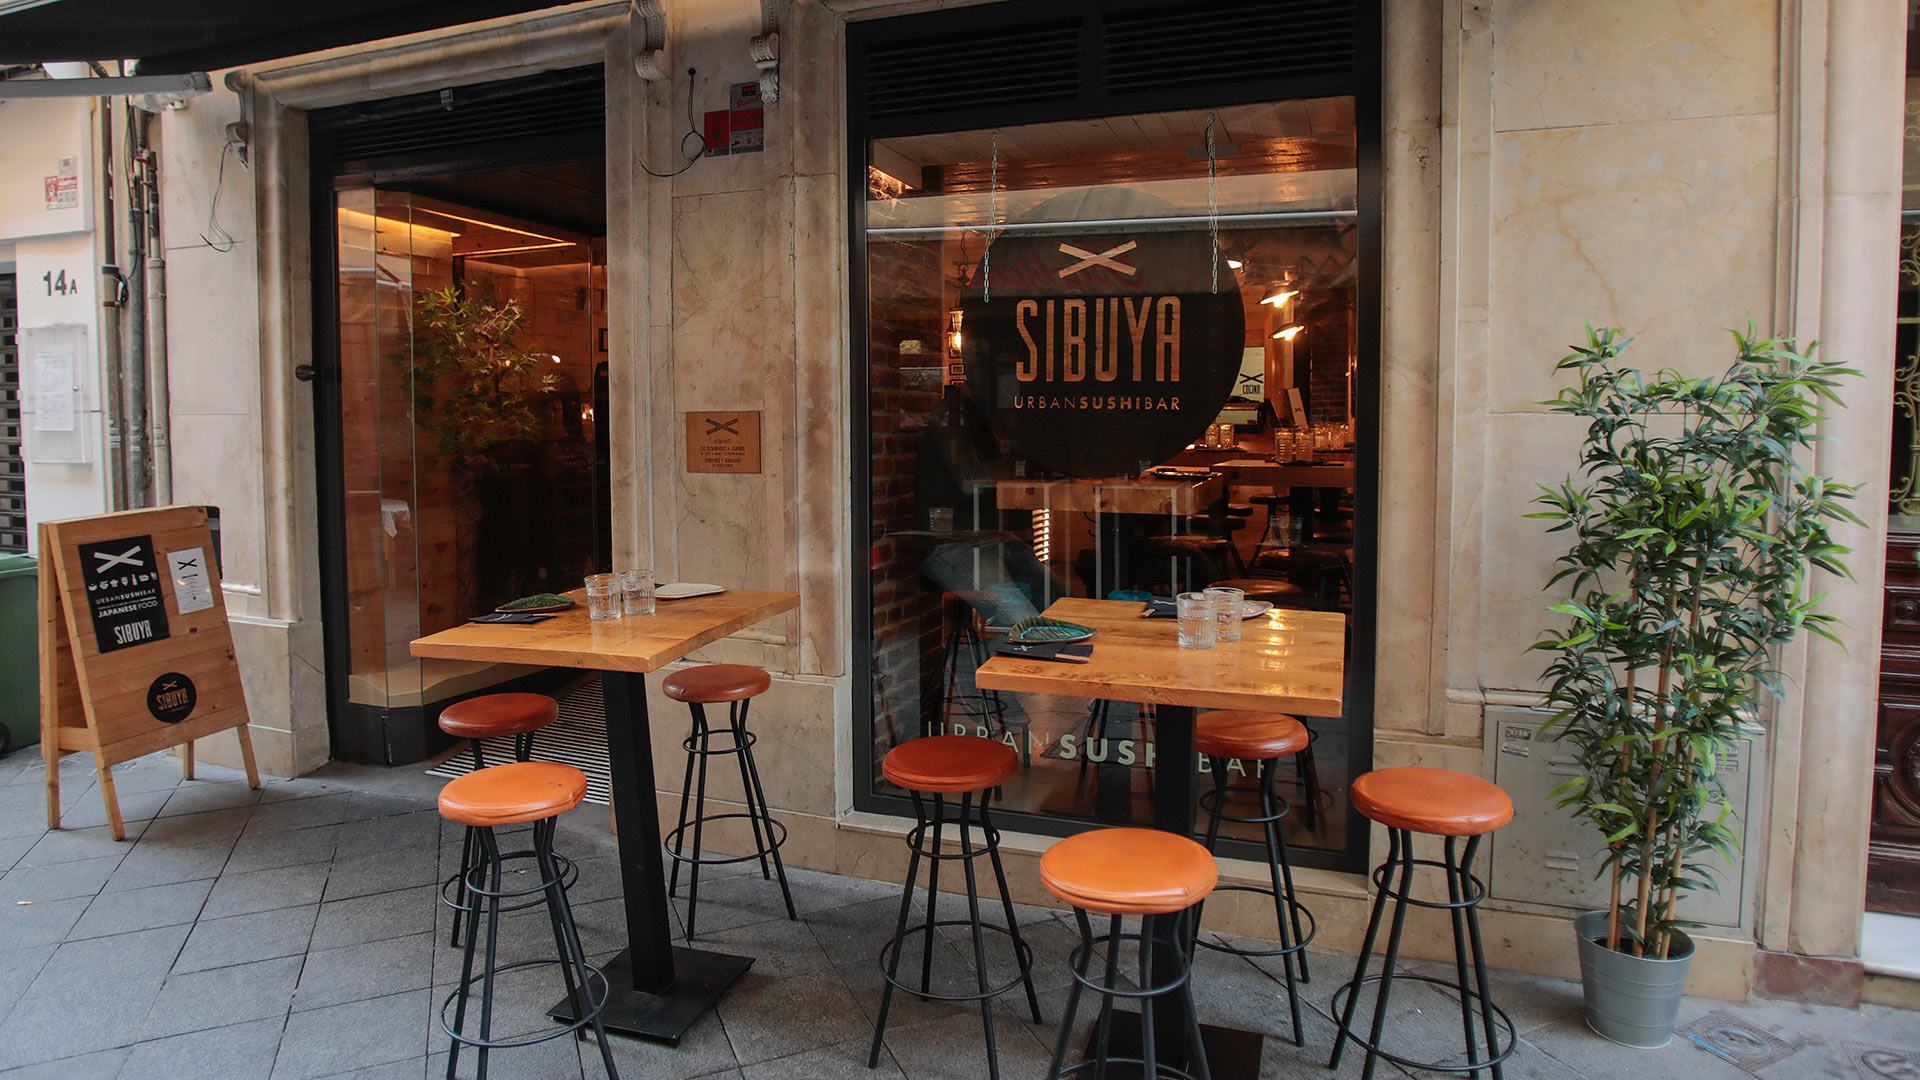 Restaurante Sibuya Urban Sushi Bar en Sevilla